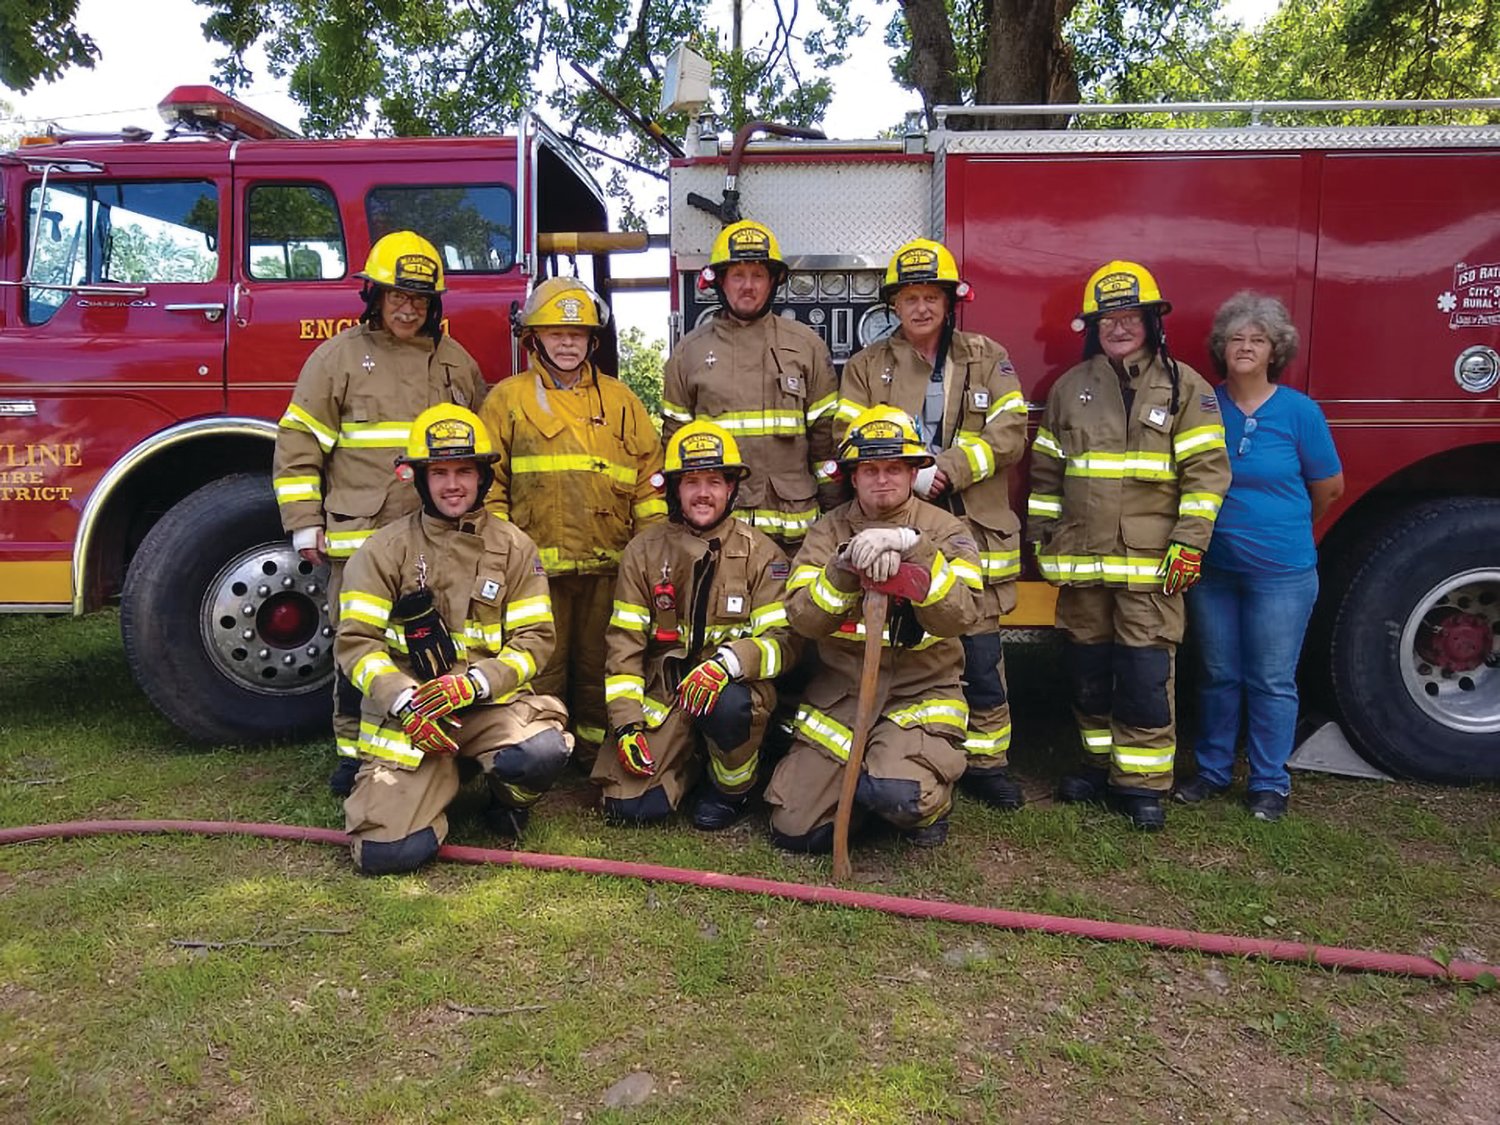 Members of the Skyline Volunteer Fire Department.